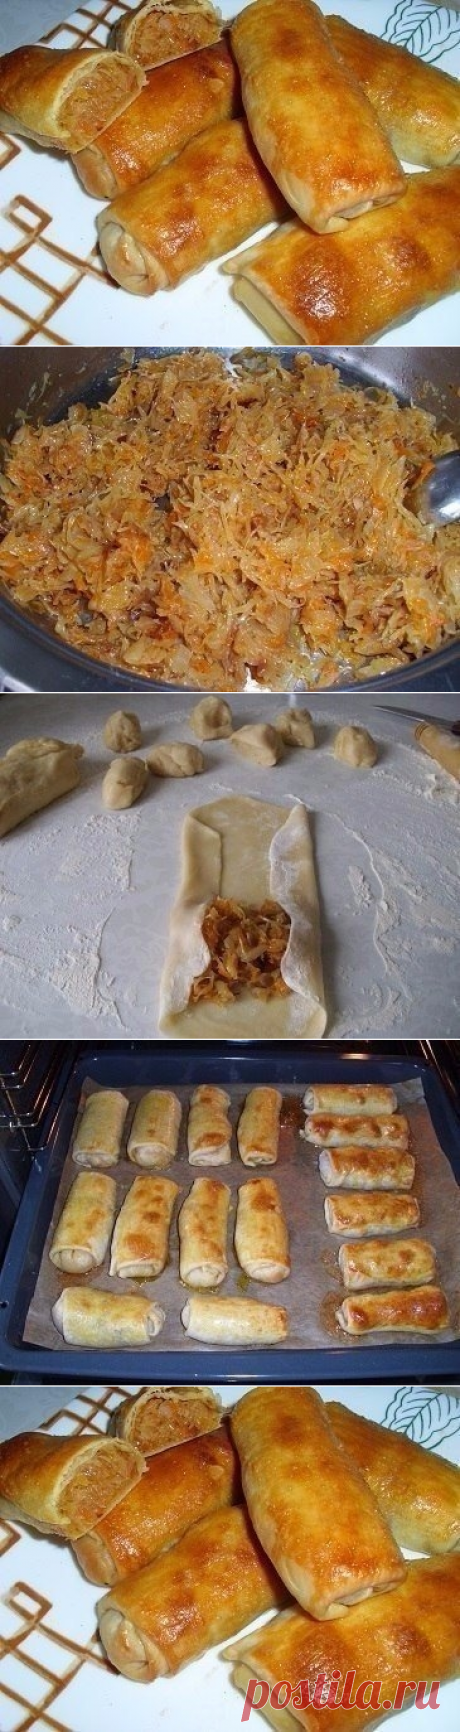 Как приготовить молдавские пирожки с капустой - рецепт, ингридиенты и фотографии